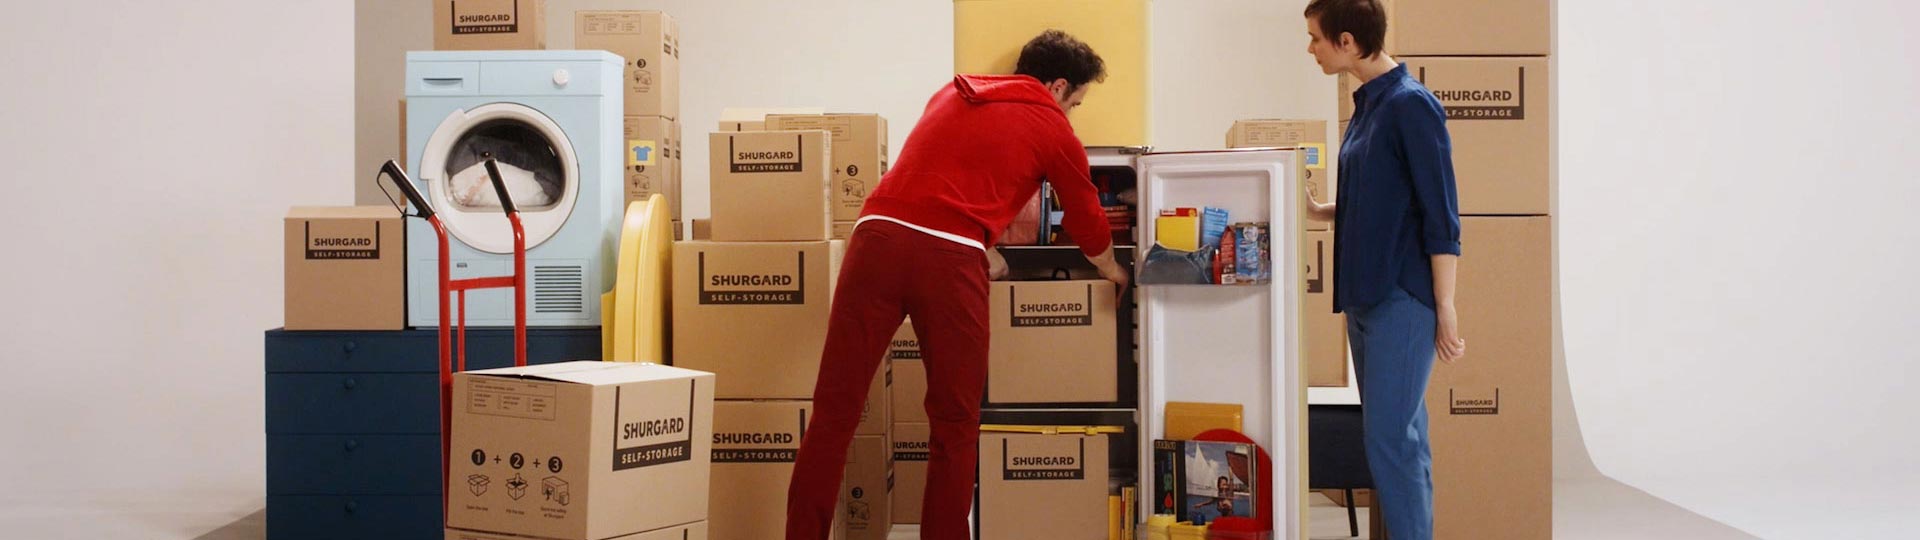 Comment emballer ses affaires pour un déménagement ? Les conseils d’emballage de Shurgard Self Storage